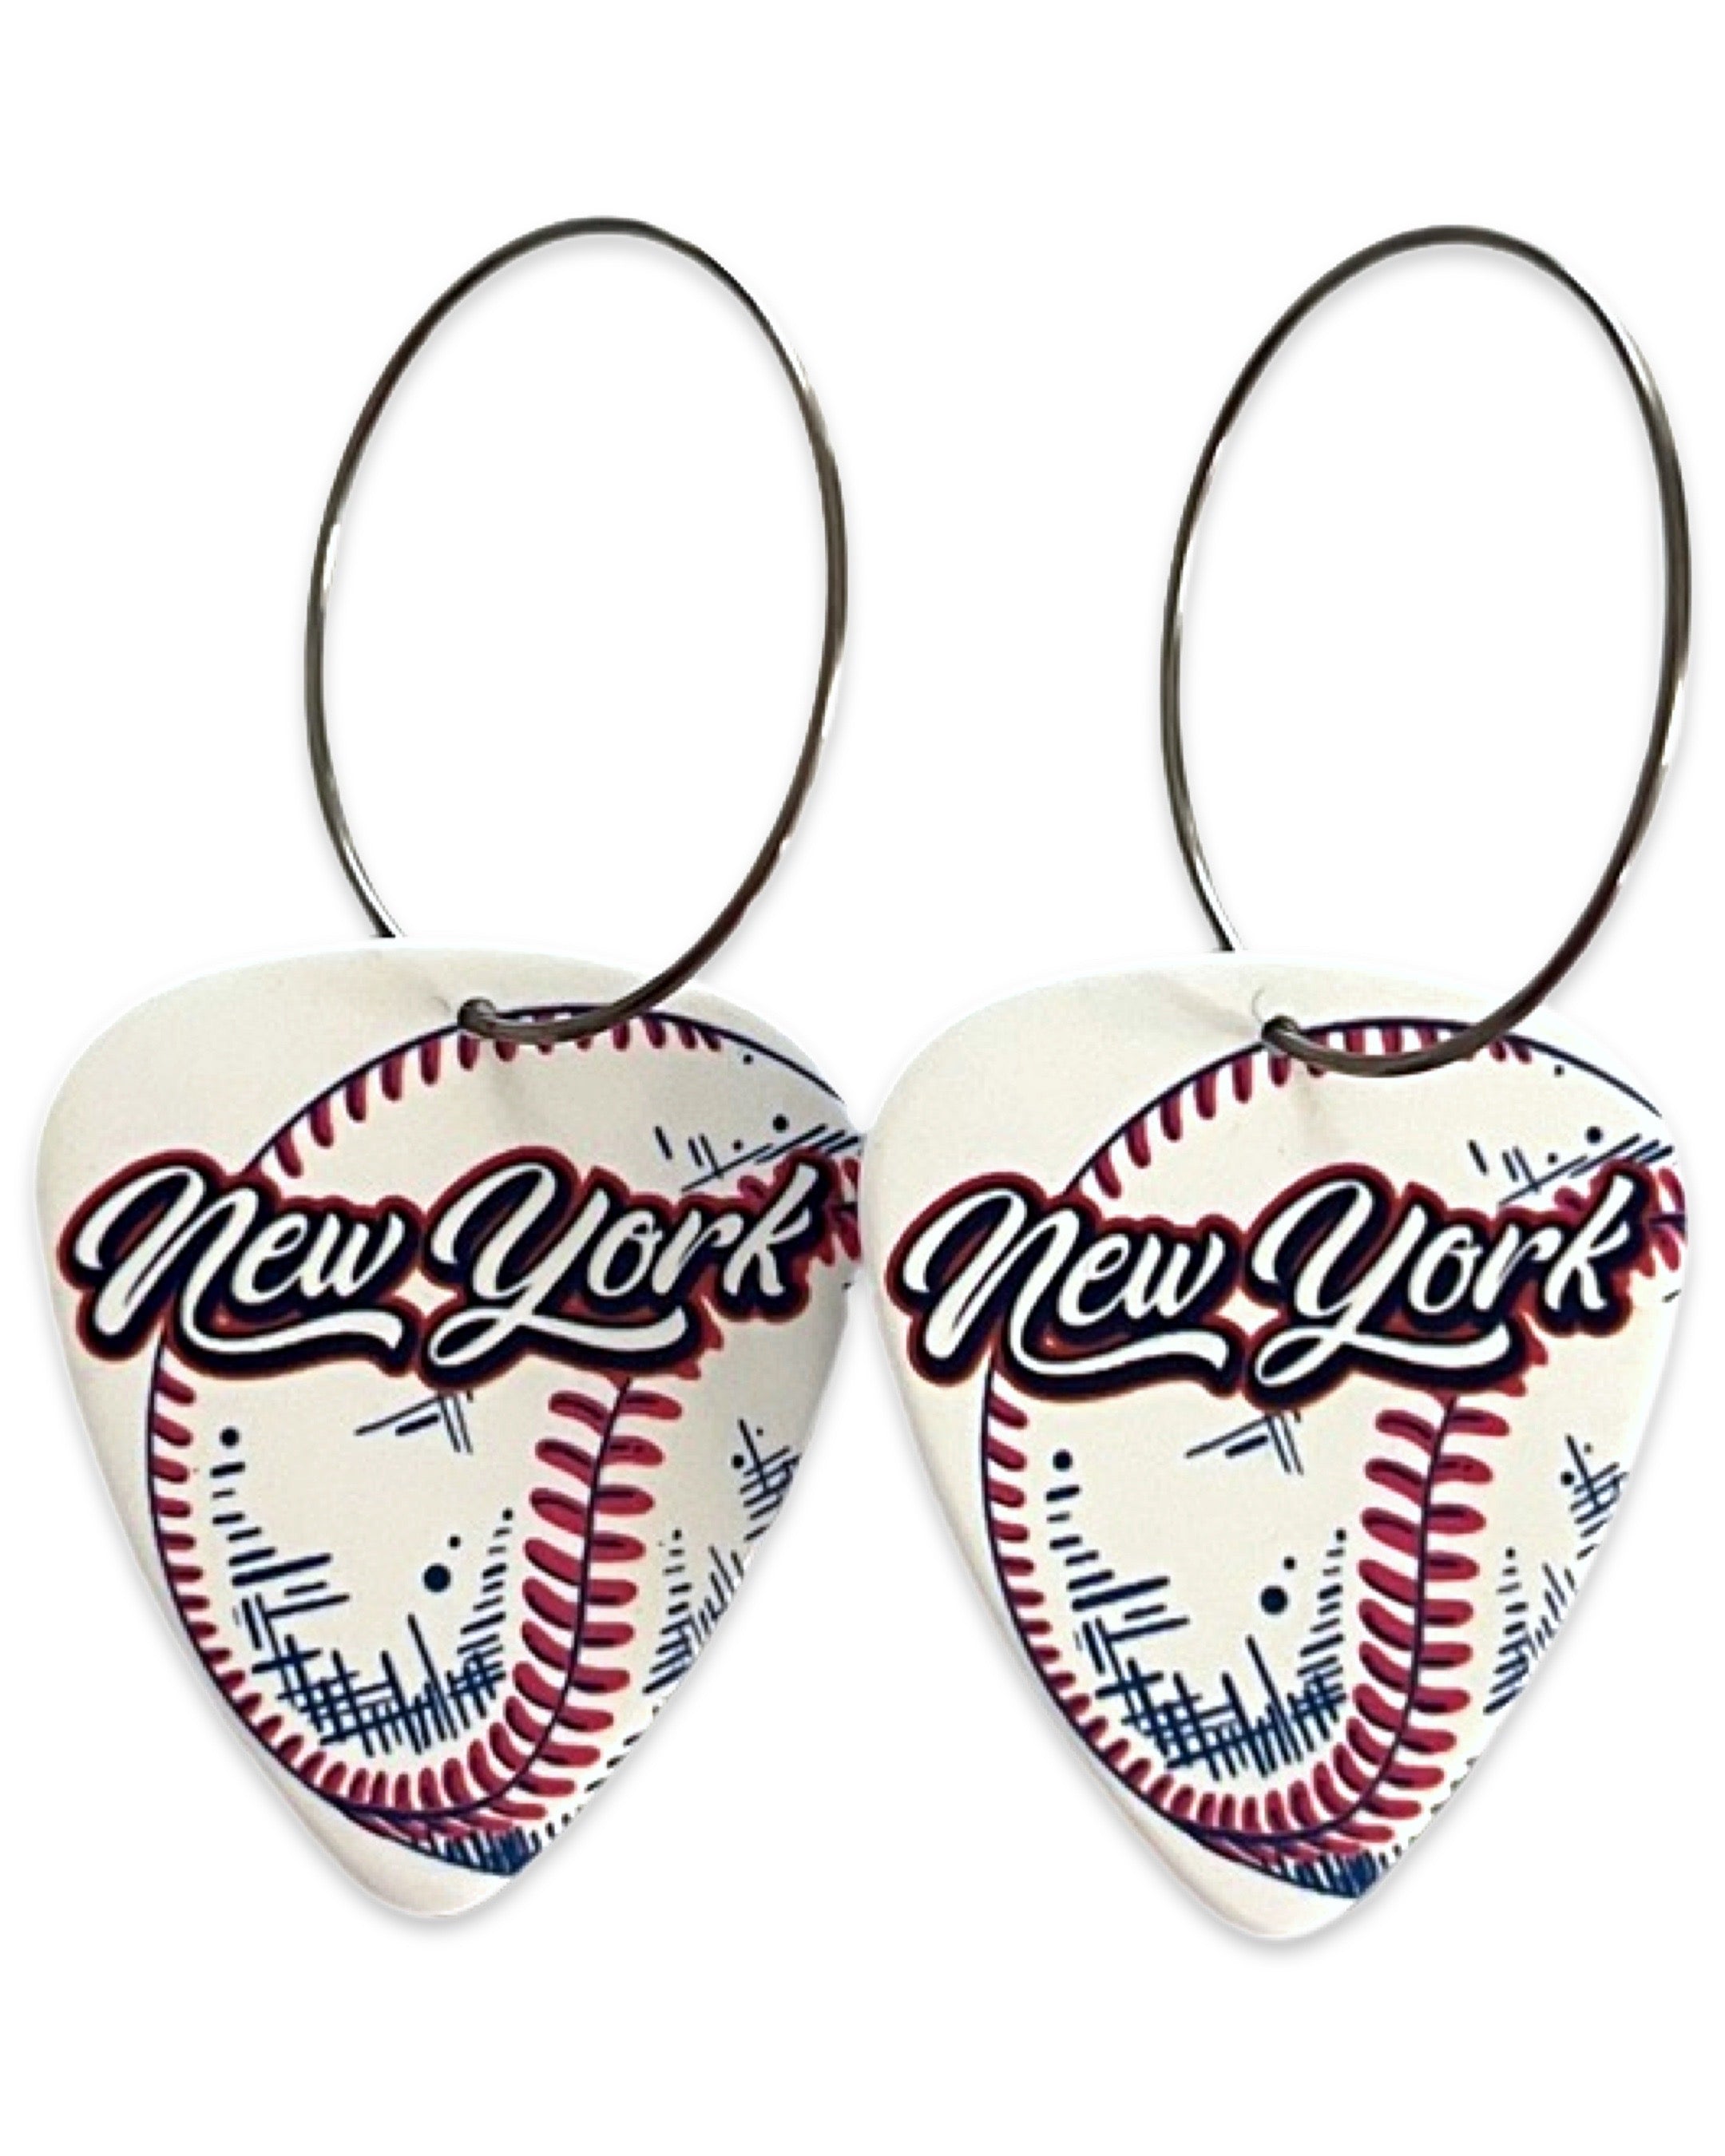 New York Baseball Reversible Single Guitar Pick Earrings